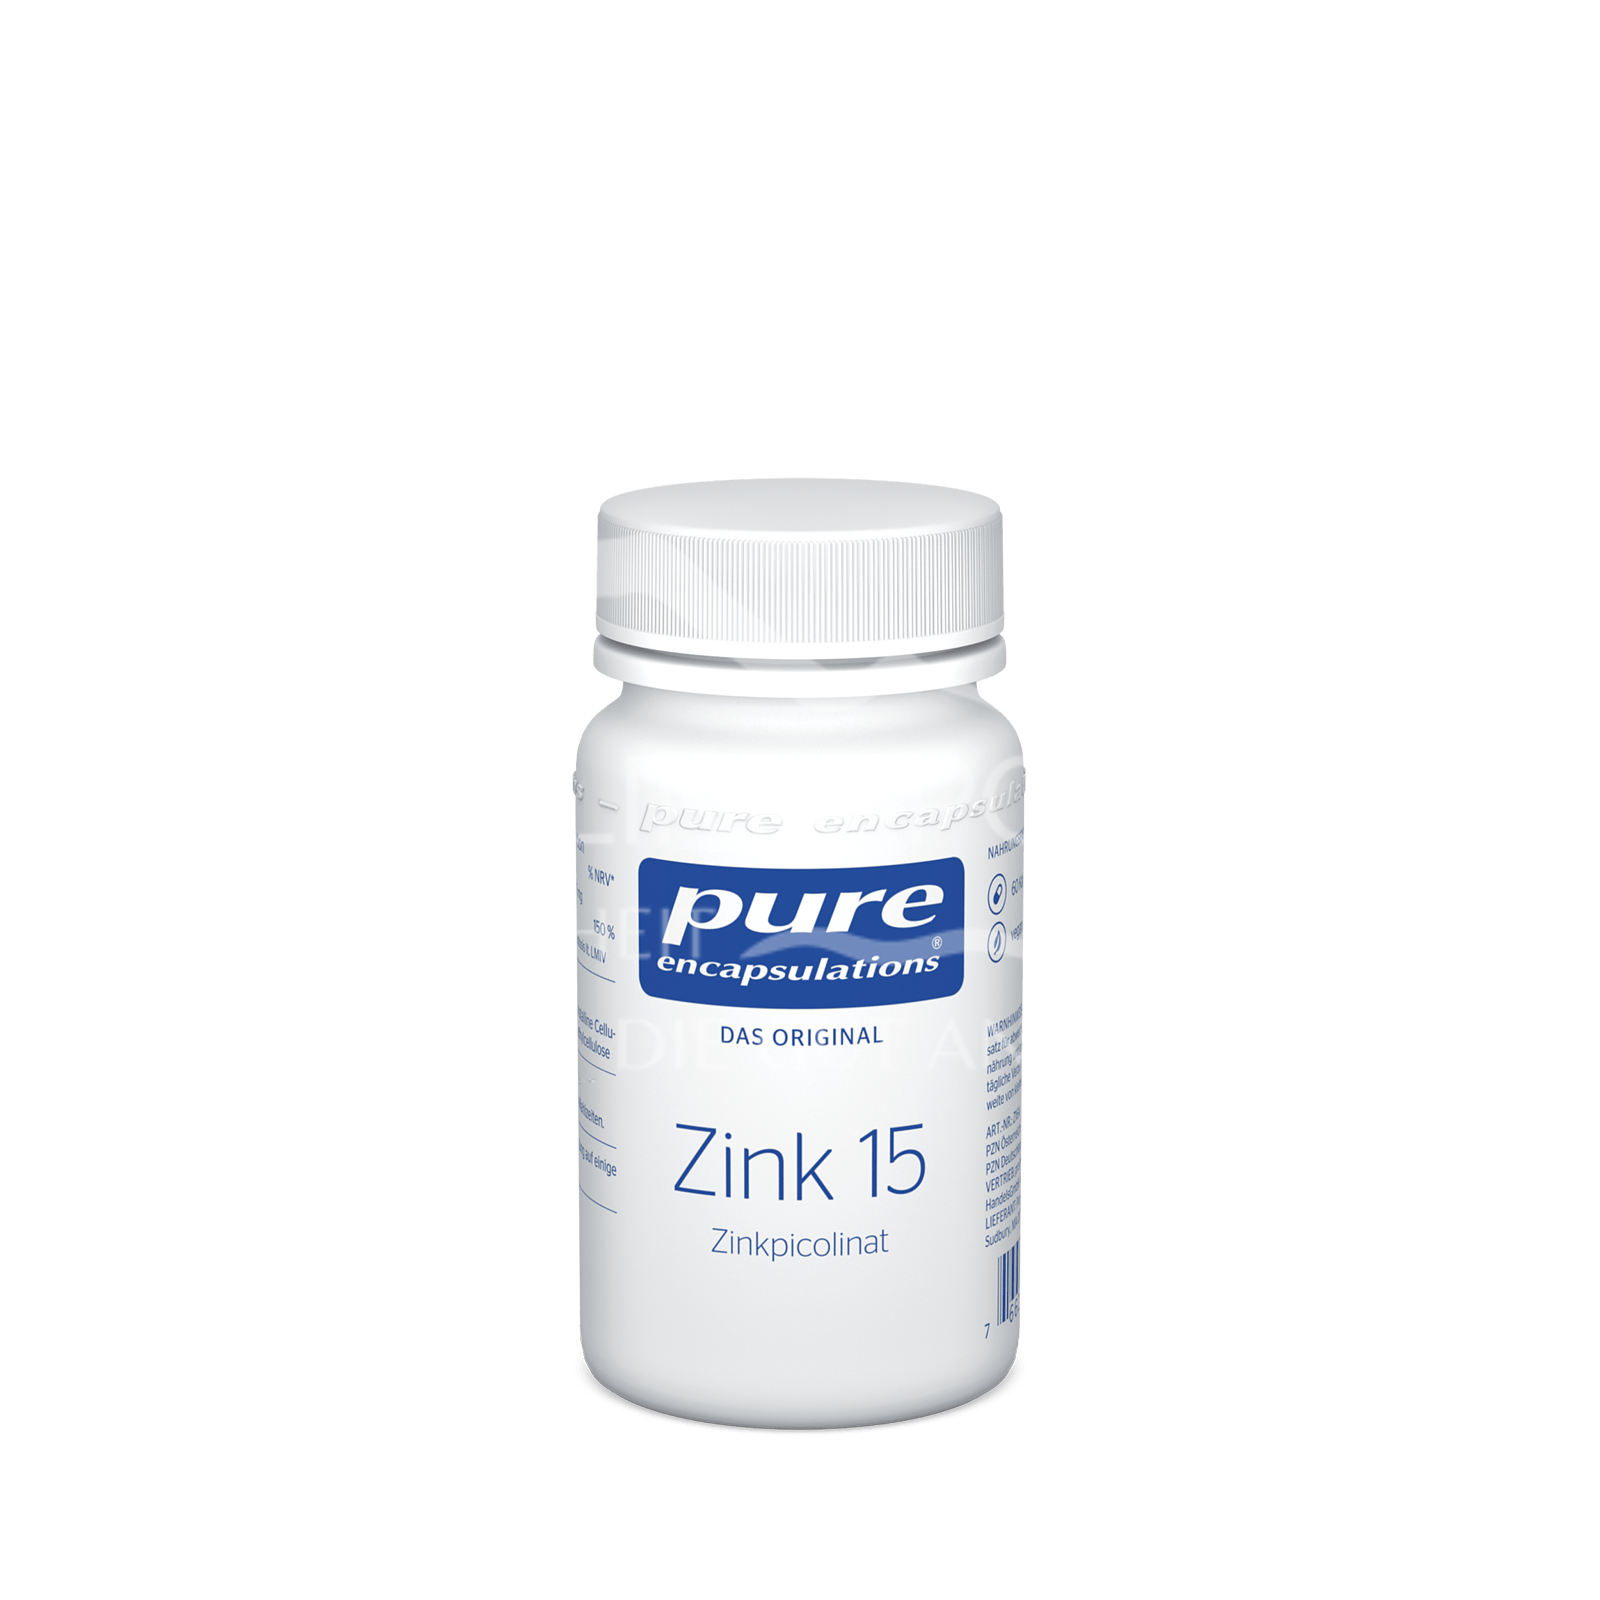 pure encapsulations® Zink 15 (Zinkpicolinat) Kapseln